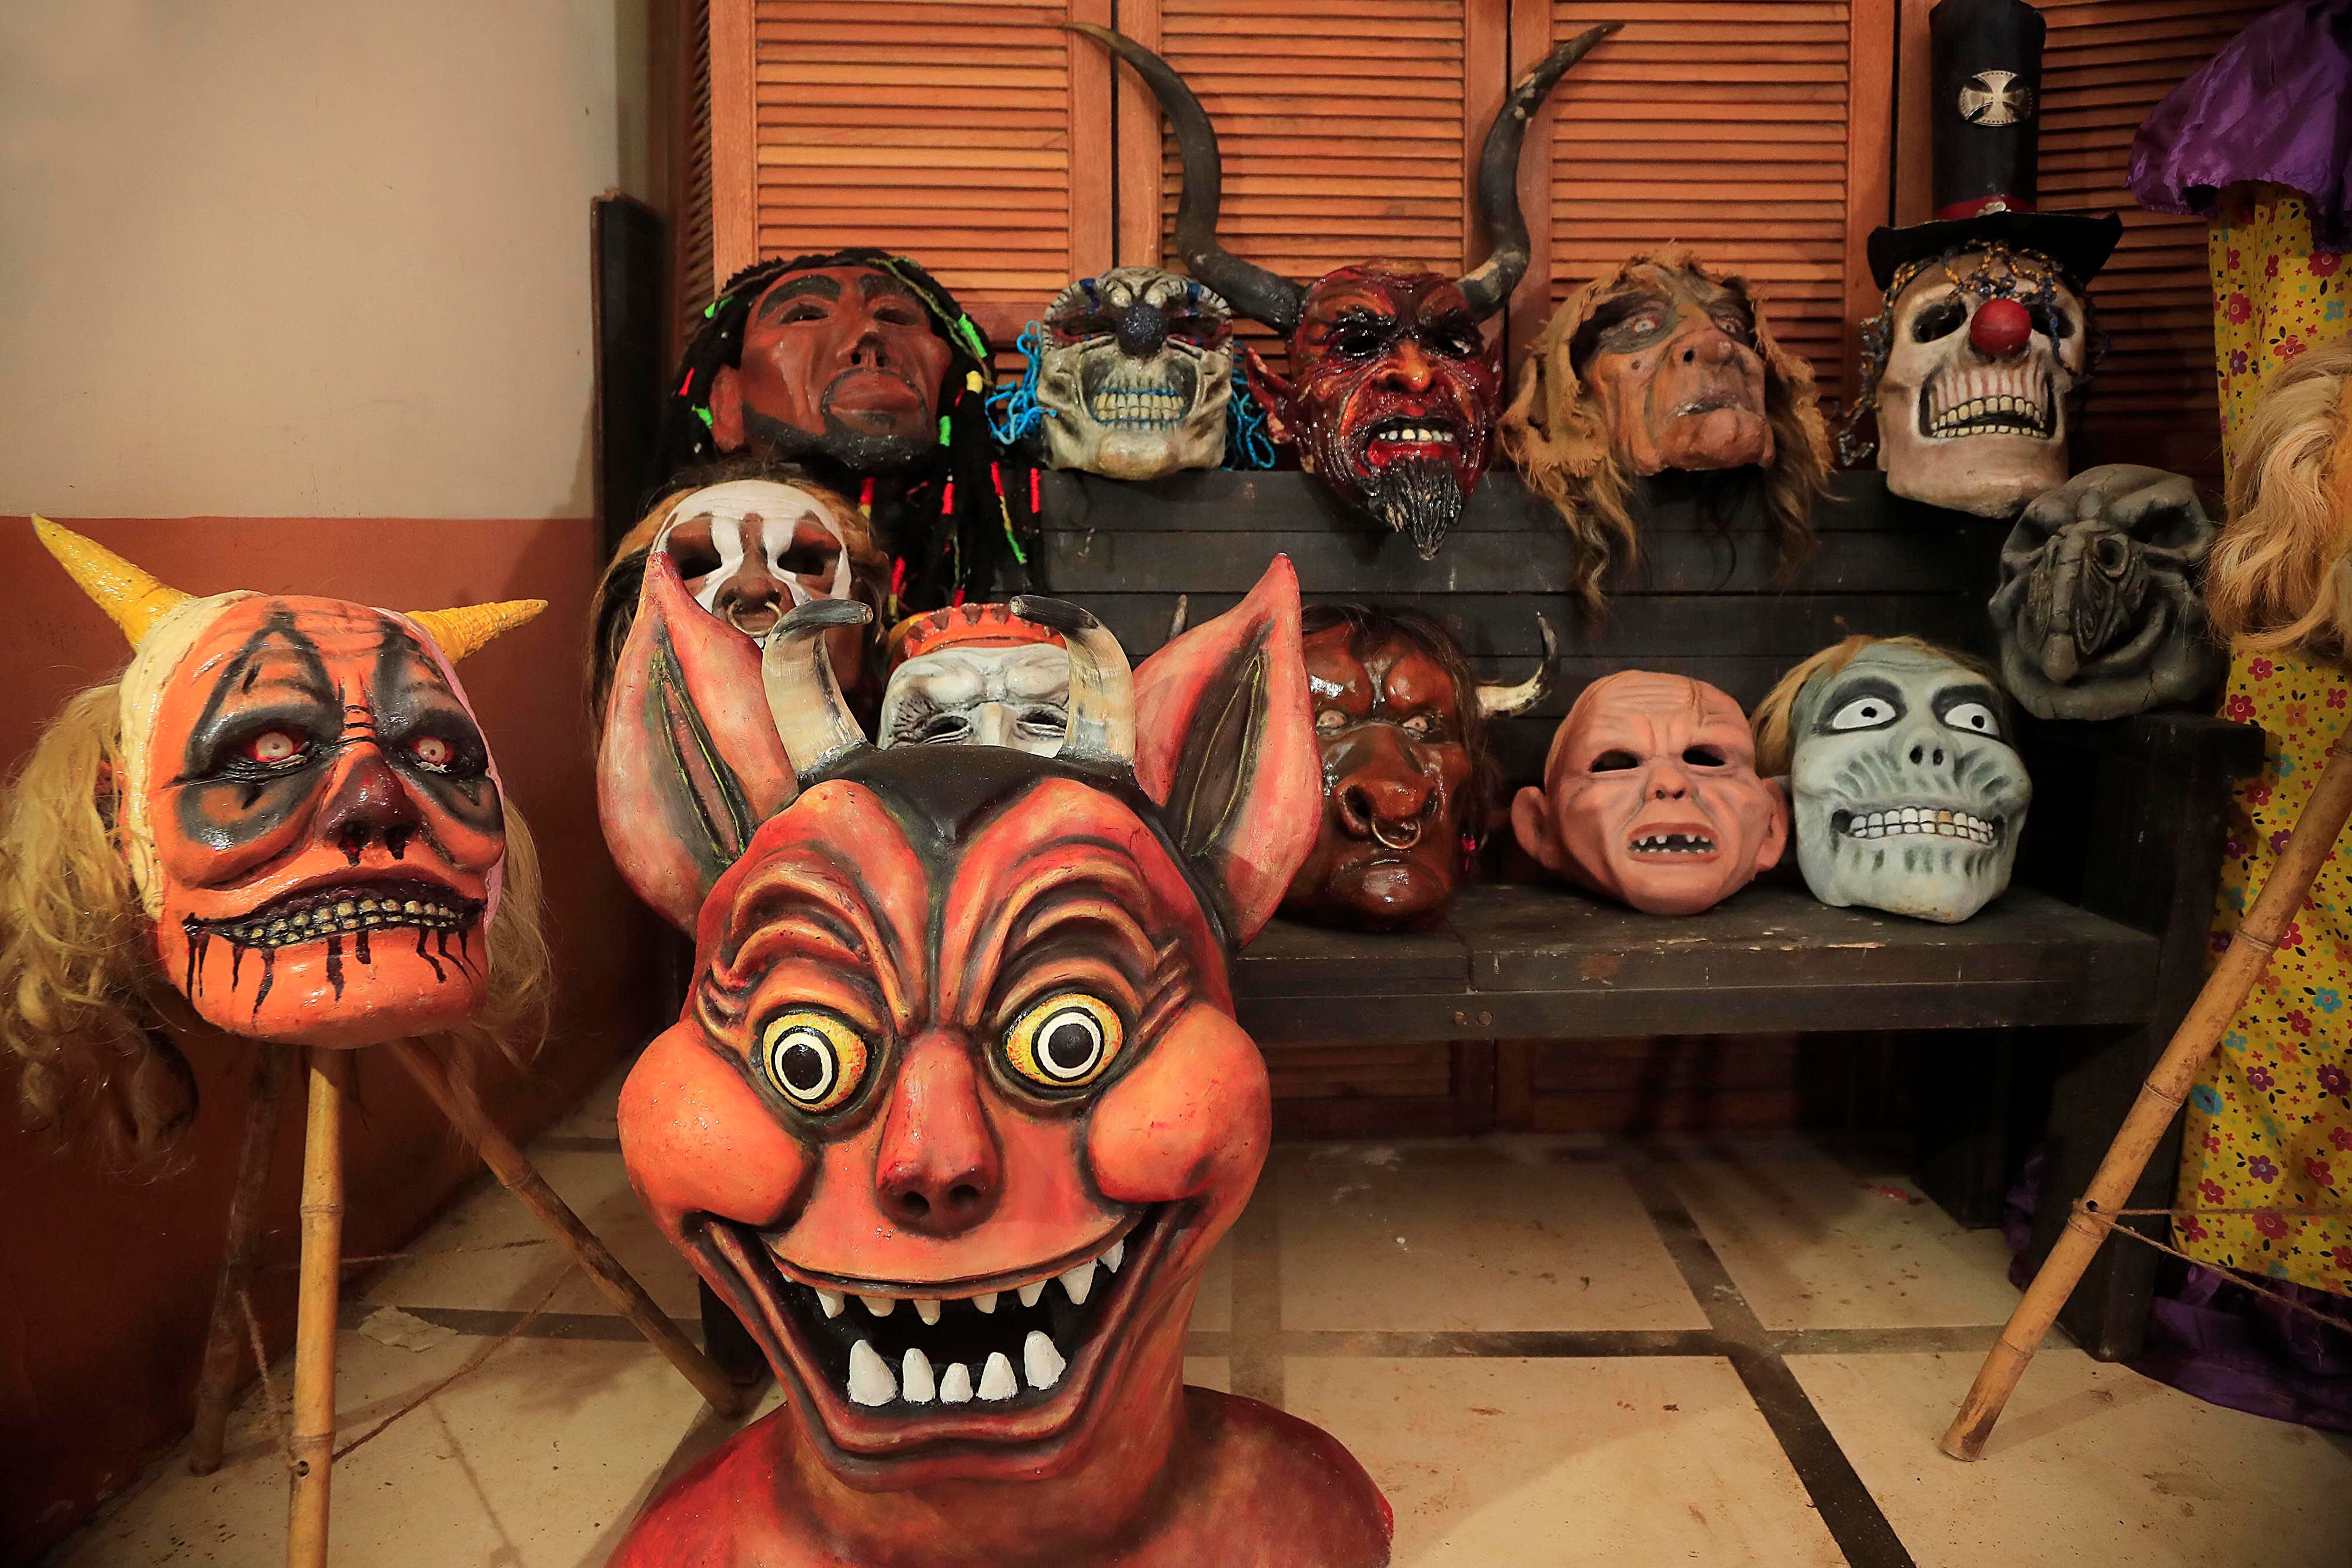 Máscaras del artista Danny Lara, que van desde tradicionales de diablos y brujas hasta figuras como Bob Marley, Mafalda y Salvador Dalí. La inspiración también viene de personajes de televisión, caricaturas y animales.